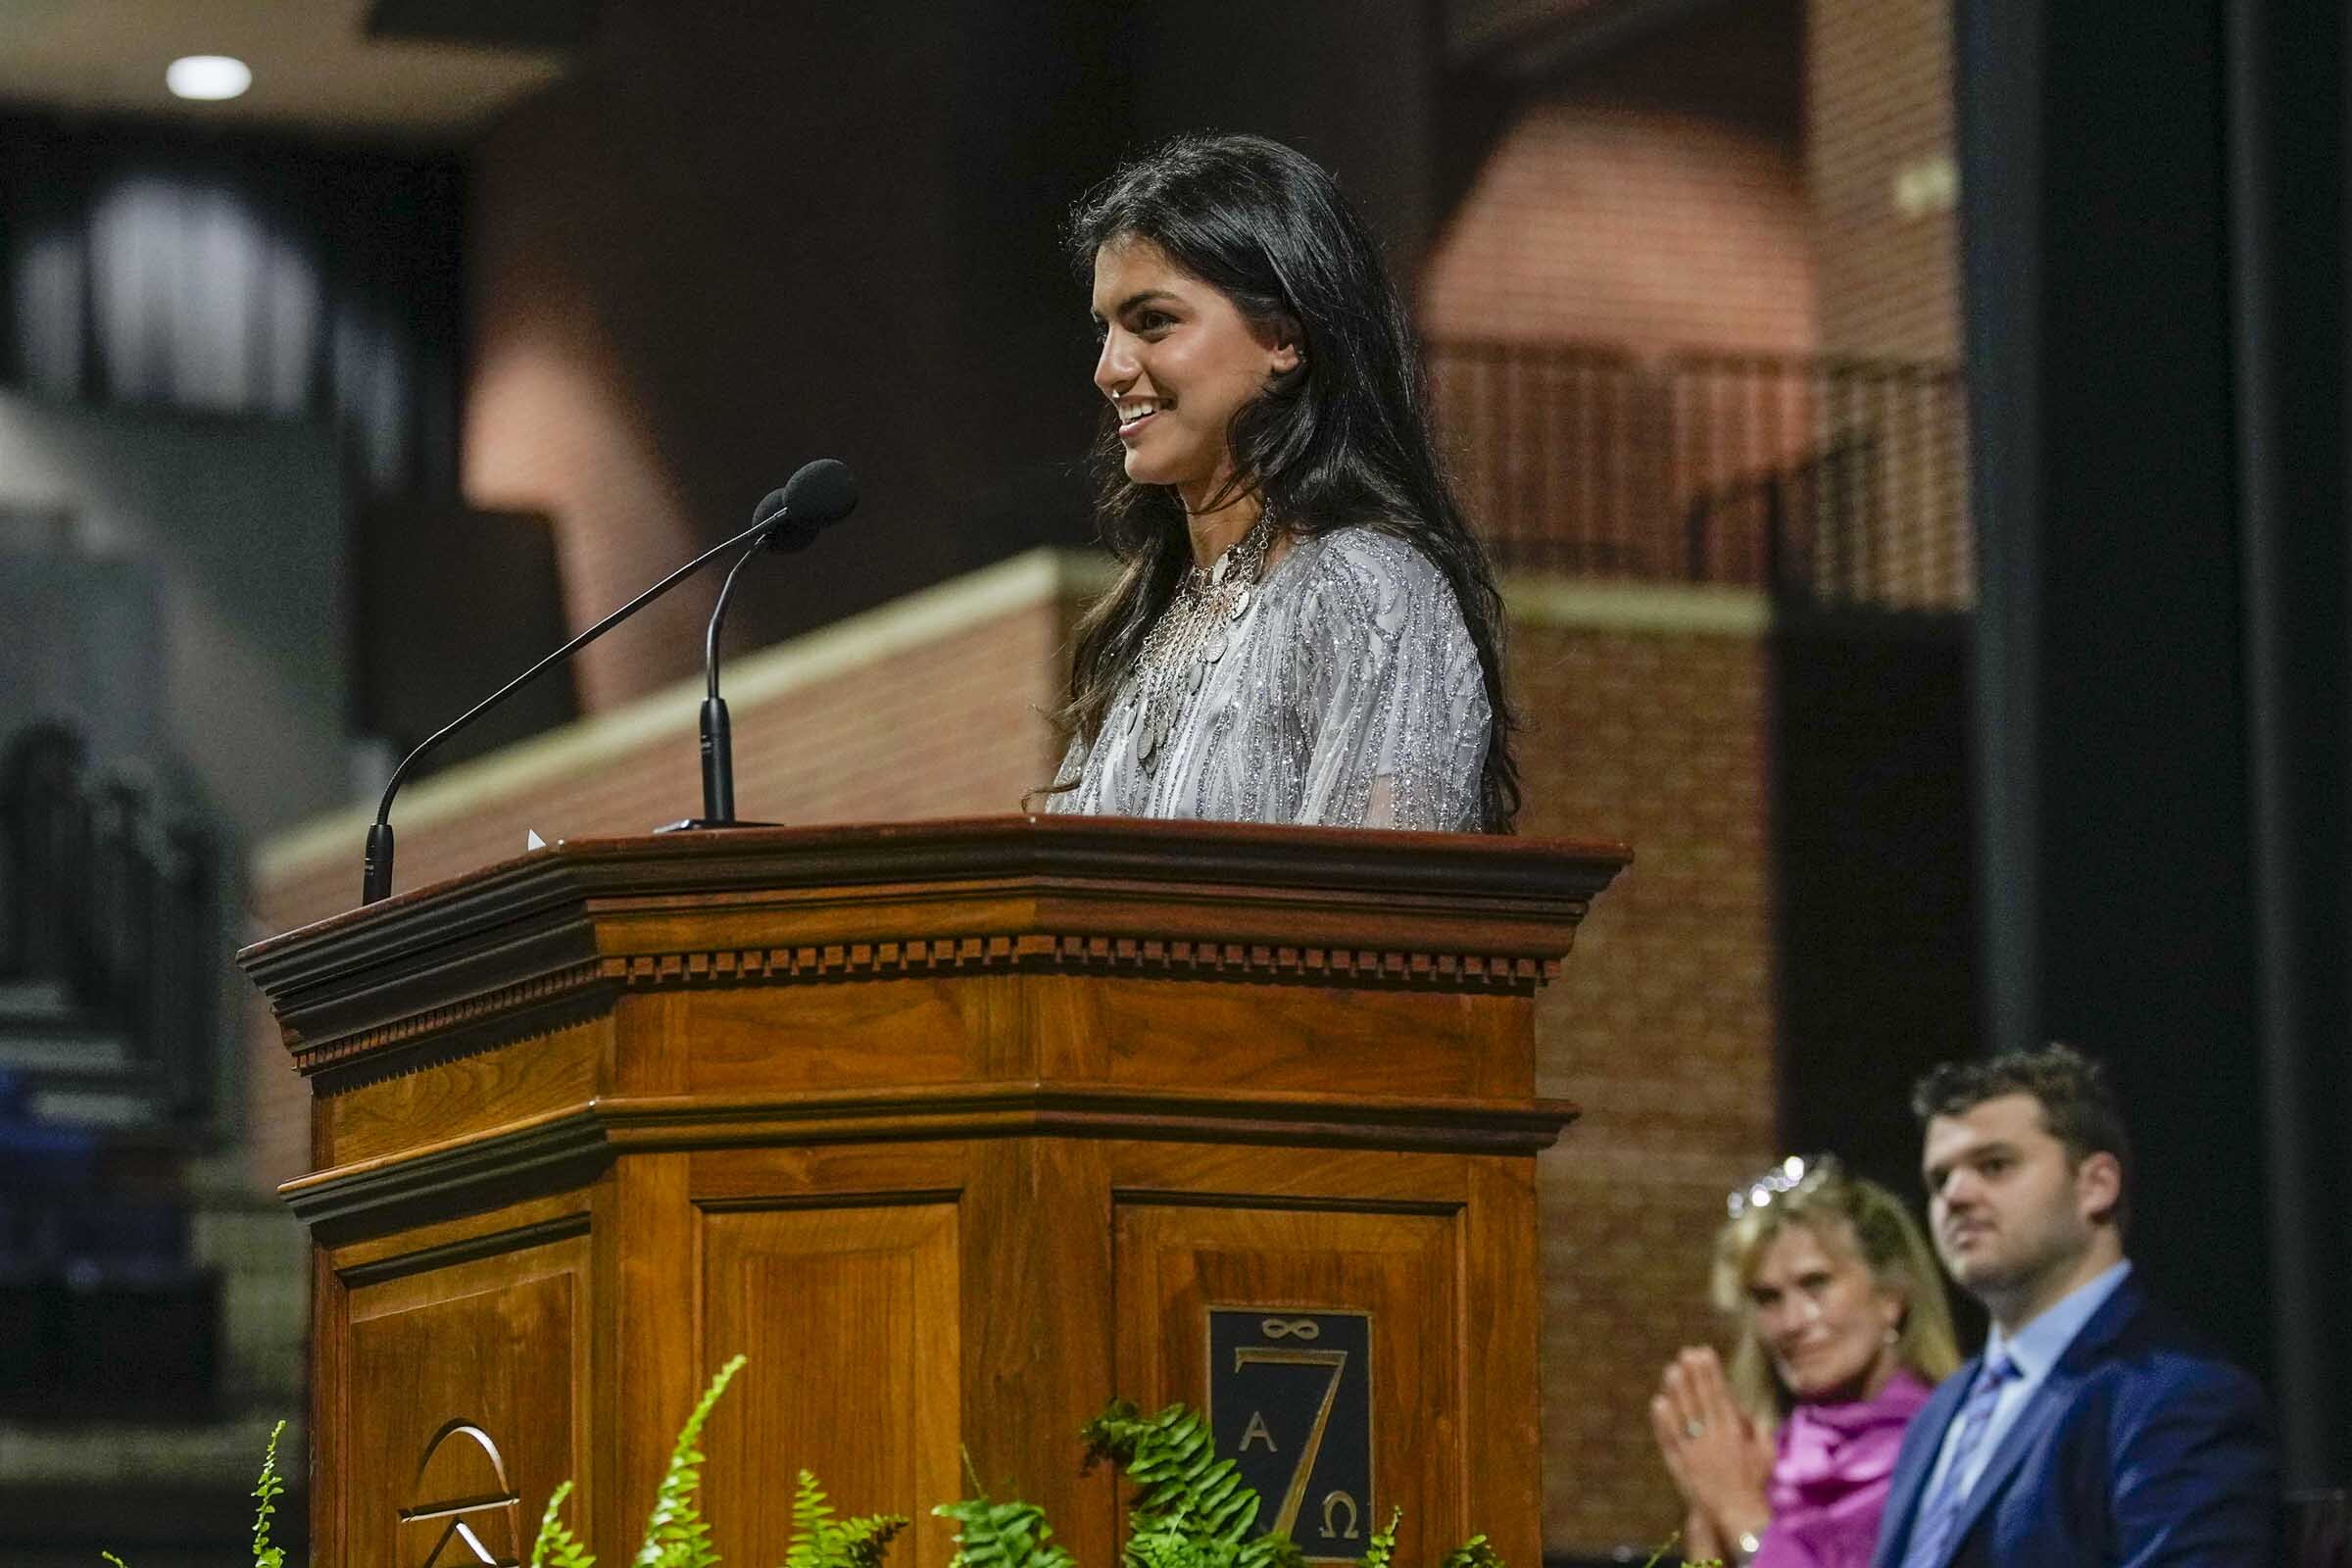 Lara Arif speaking at the podium at Valediction 2023